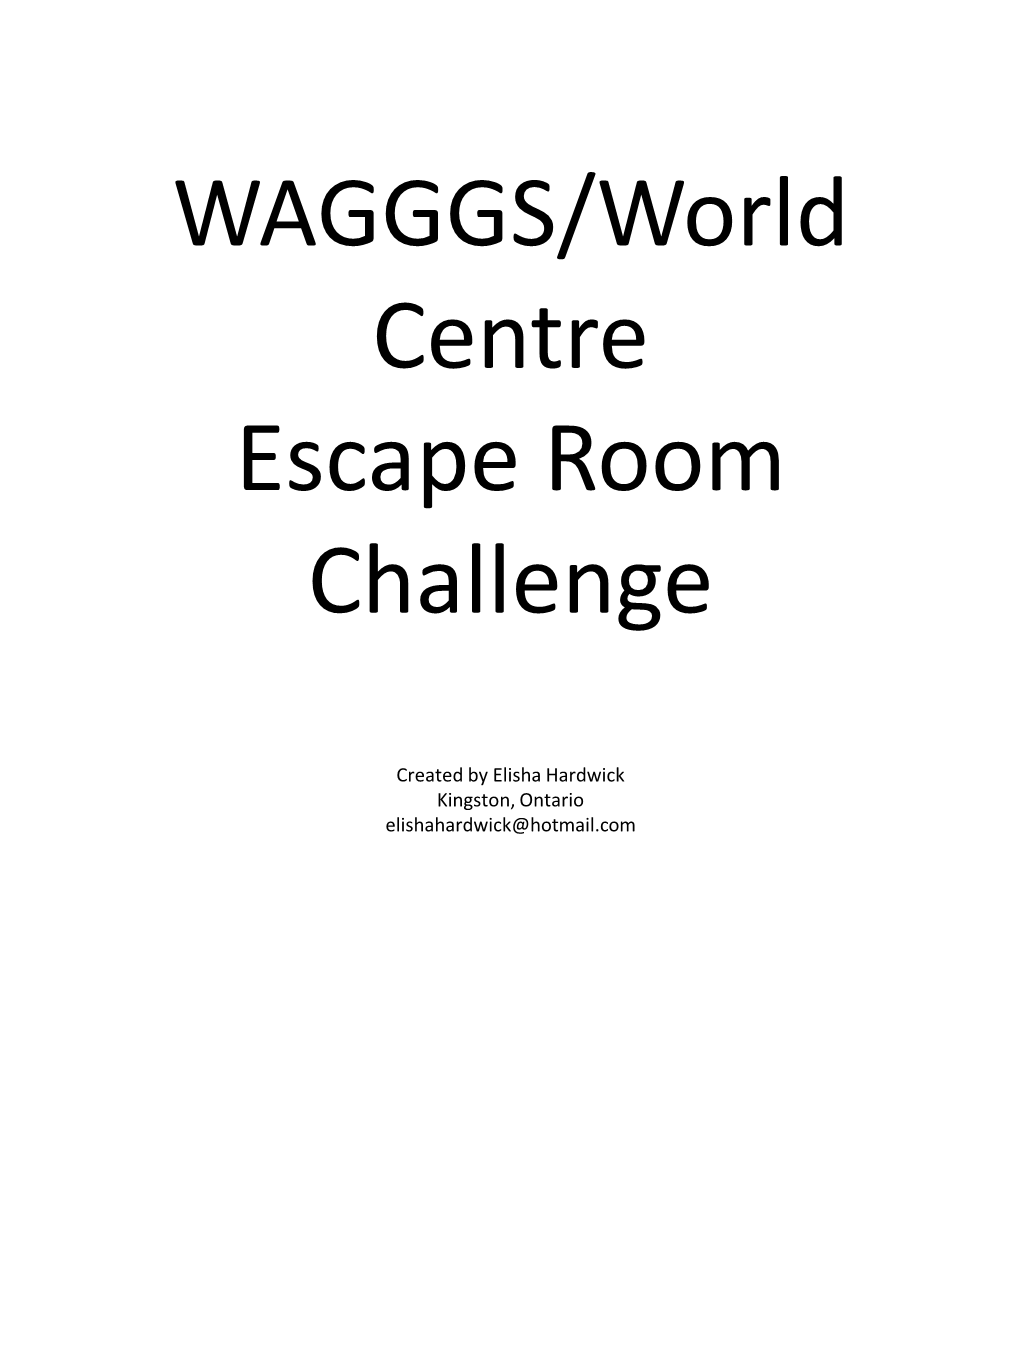 WAGGGS/World Centre Escape Room Challenge